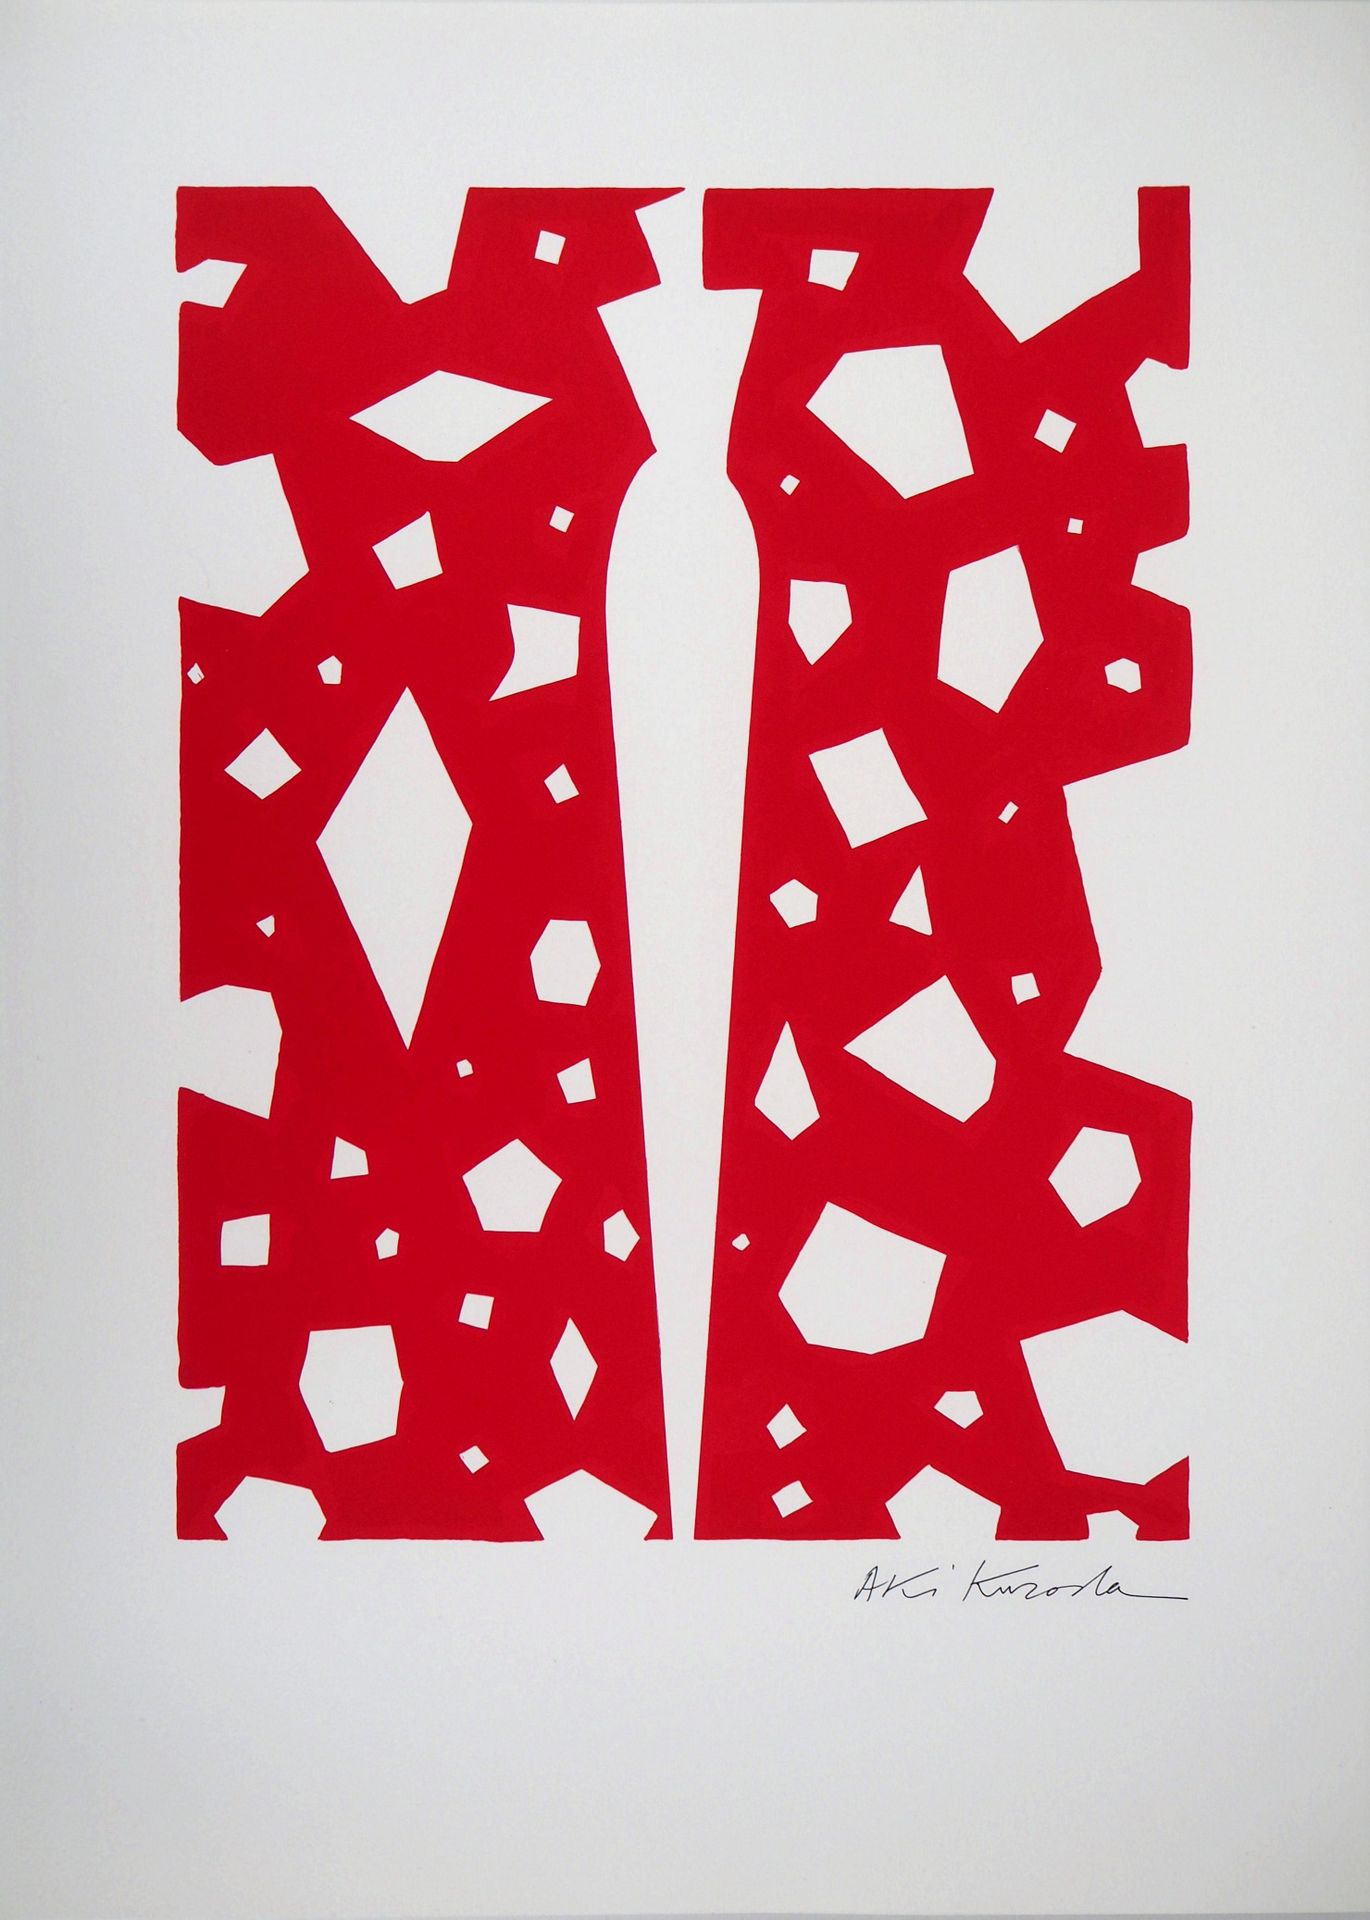 AKI KURODA Aki KURODA

Silueta sobre fondo rojo

Litografía original en colores
&hellip;